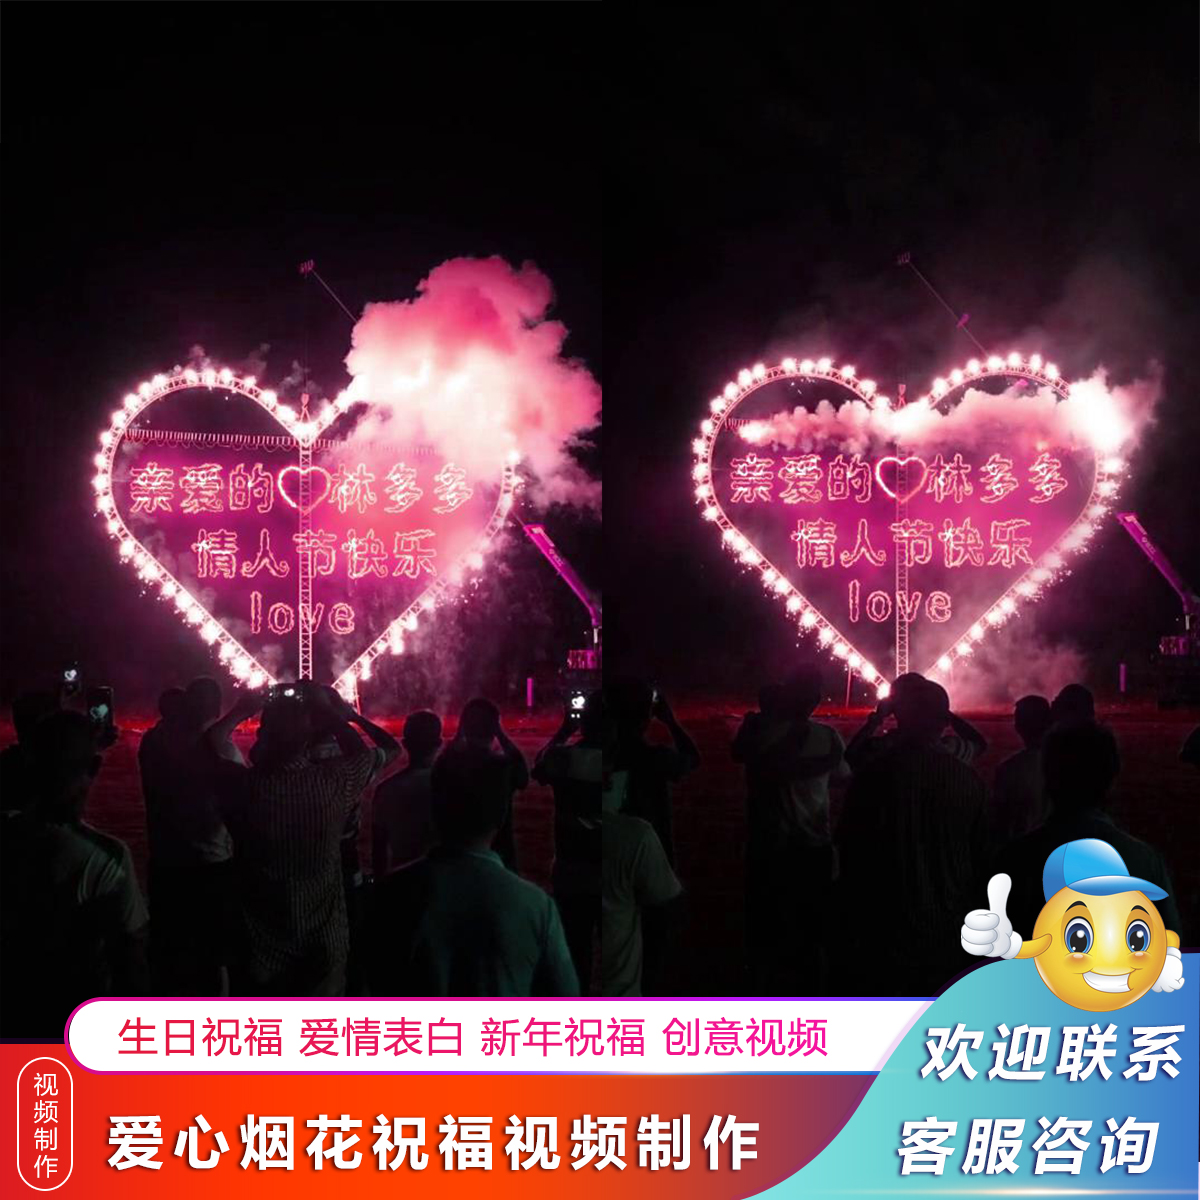 520情人节祝福视频制作爱心烟花火焰文字表白生日祝福小视频制作